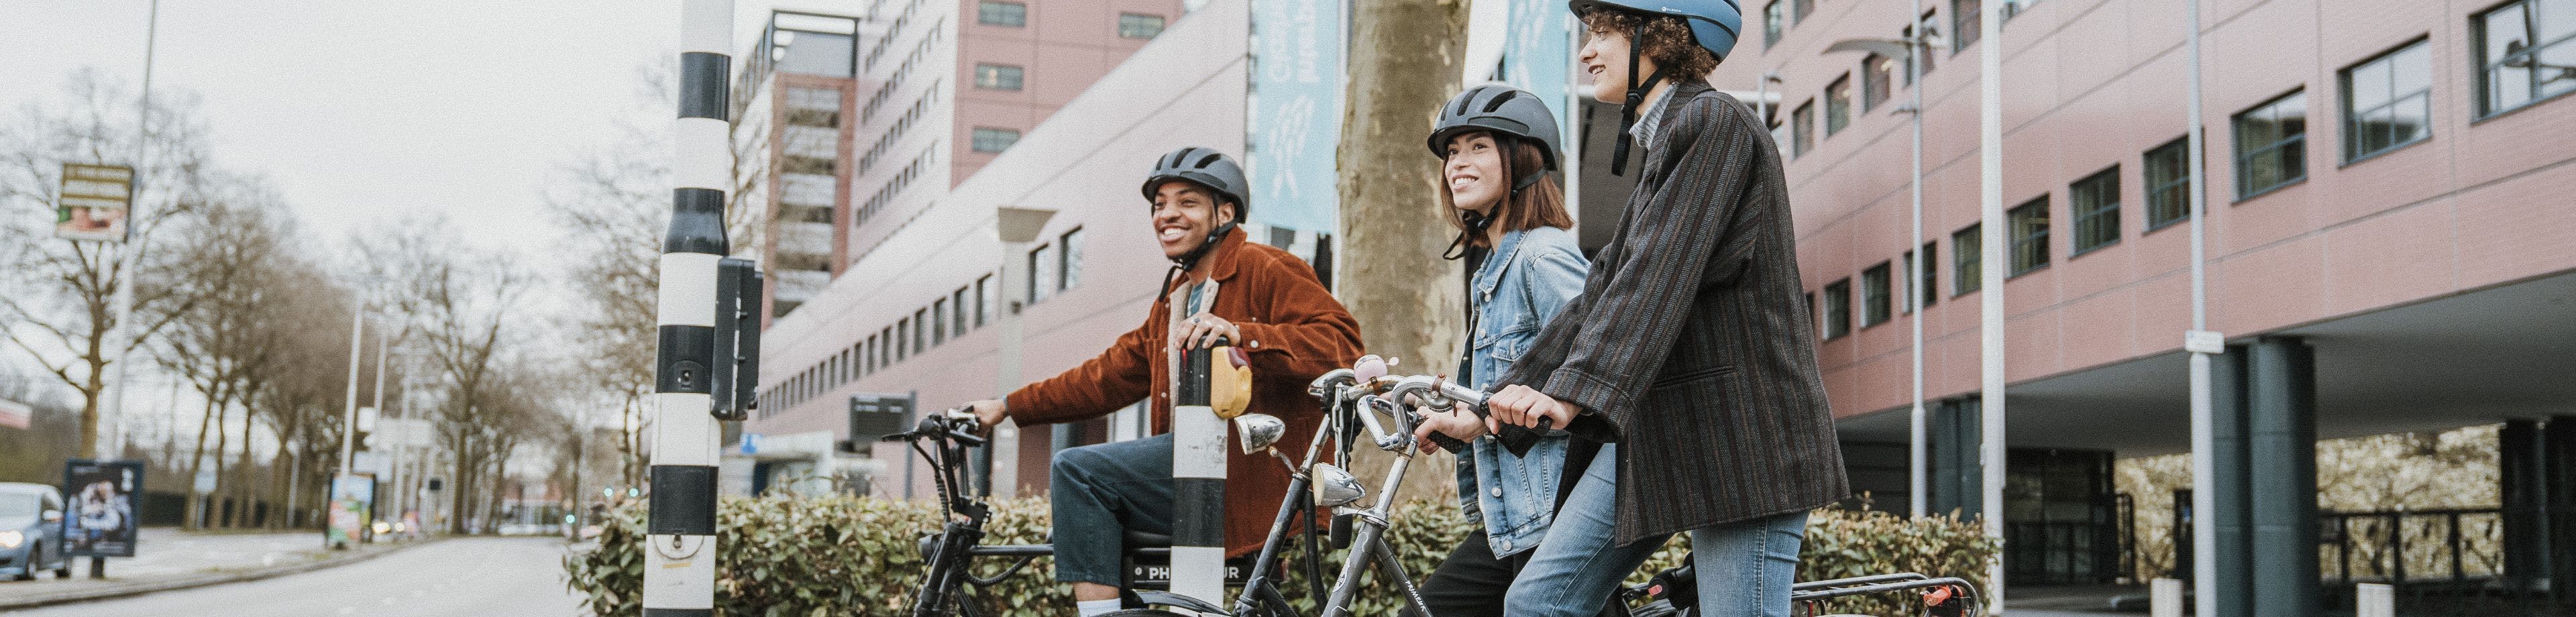 3 jongeren op hun fiets met een fietshelm op wachten voor een stoplicht.